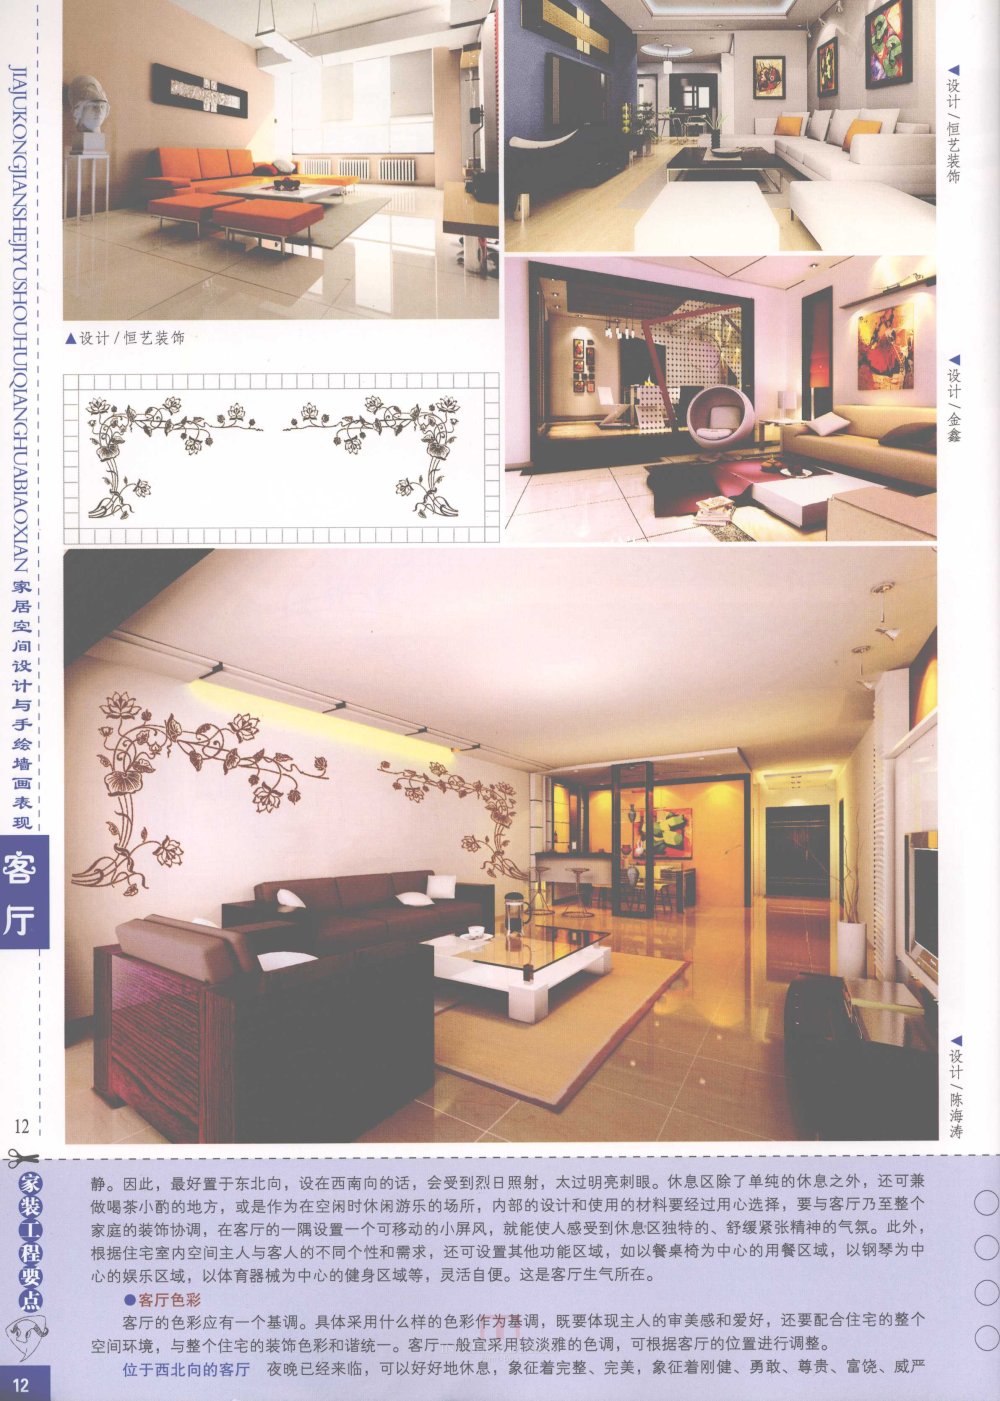 家居空间设计与手绘墙画表现客厅_家居空间设计与手绘墙画表现客厅-14.jpg